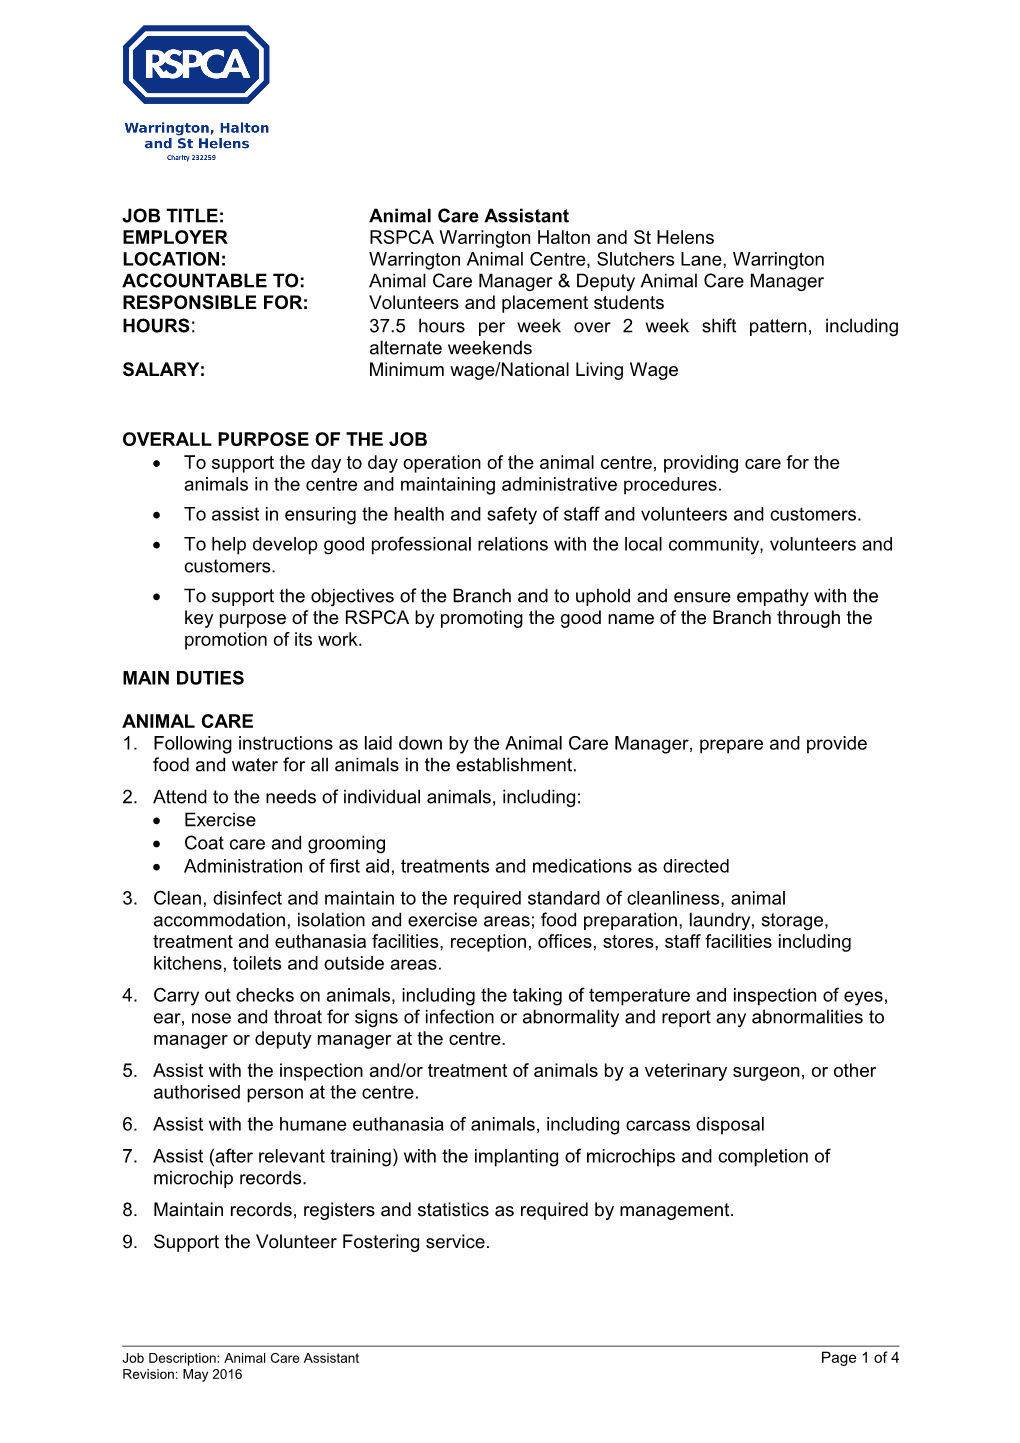 Animal Care Assistant - Job Description